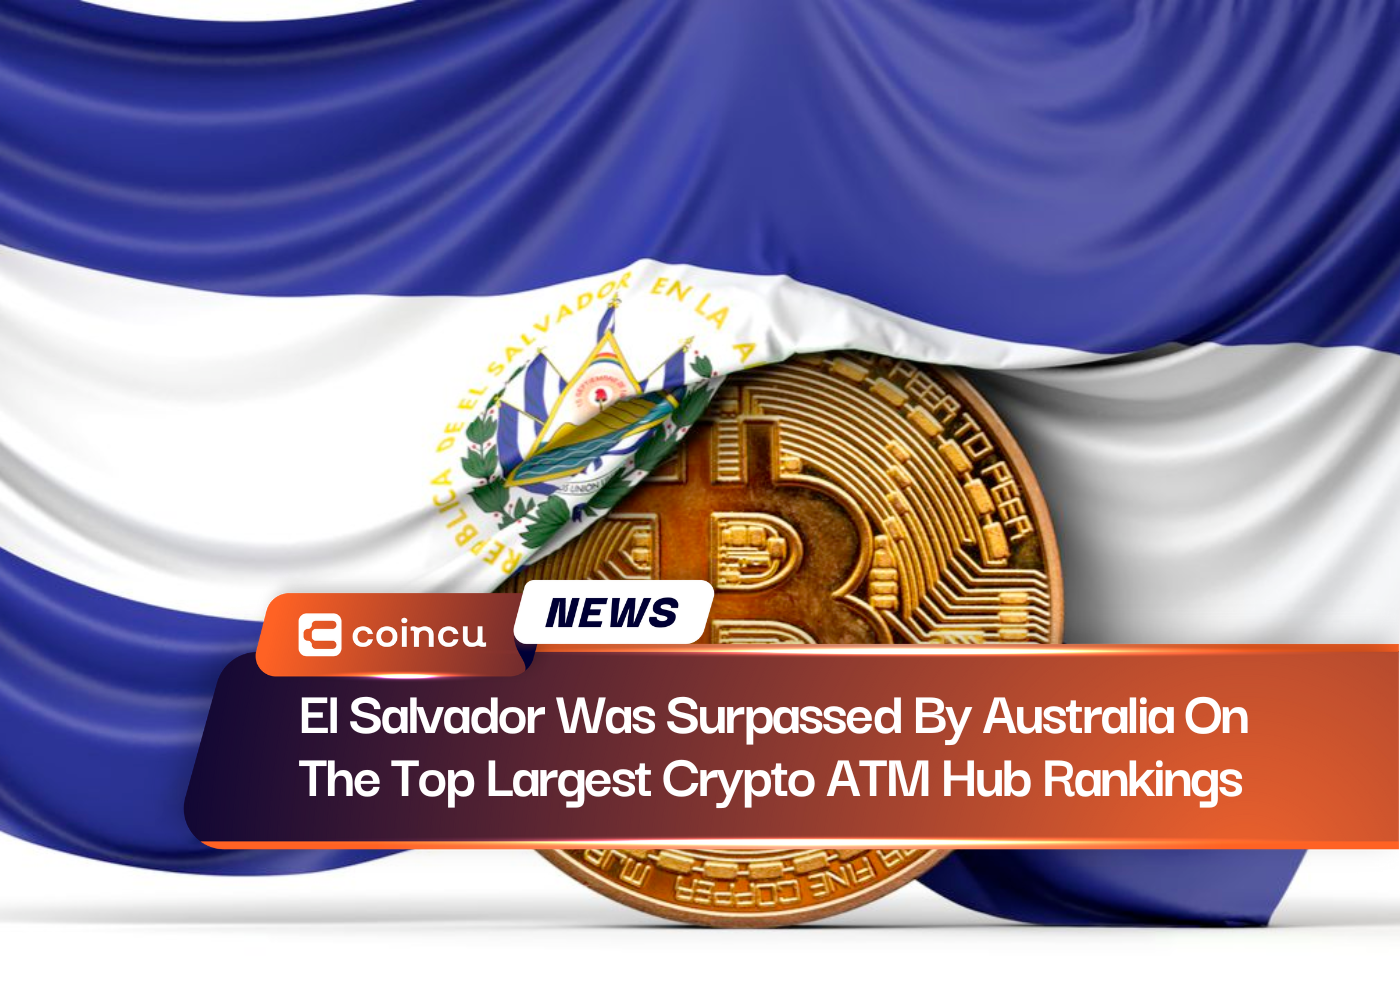 El Salvador fue superado por Australia en el ranking de centros de cajeros automáticos criptográficos más grandes